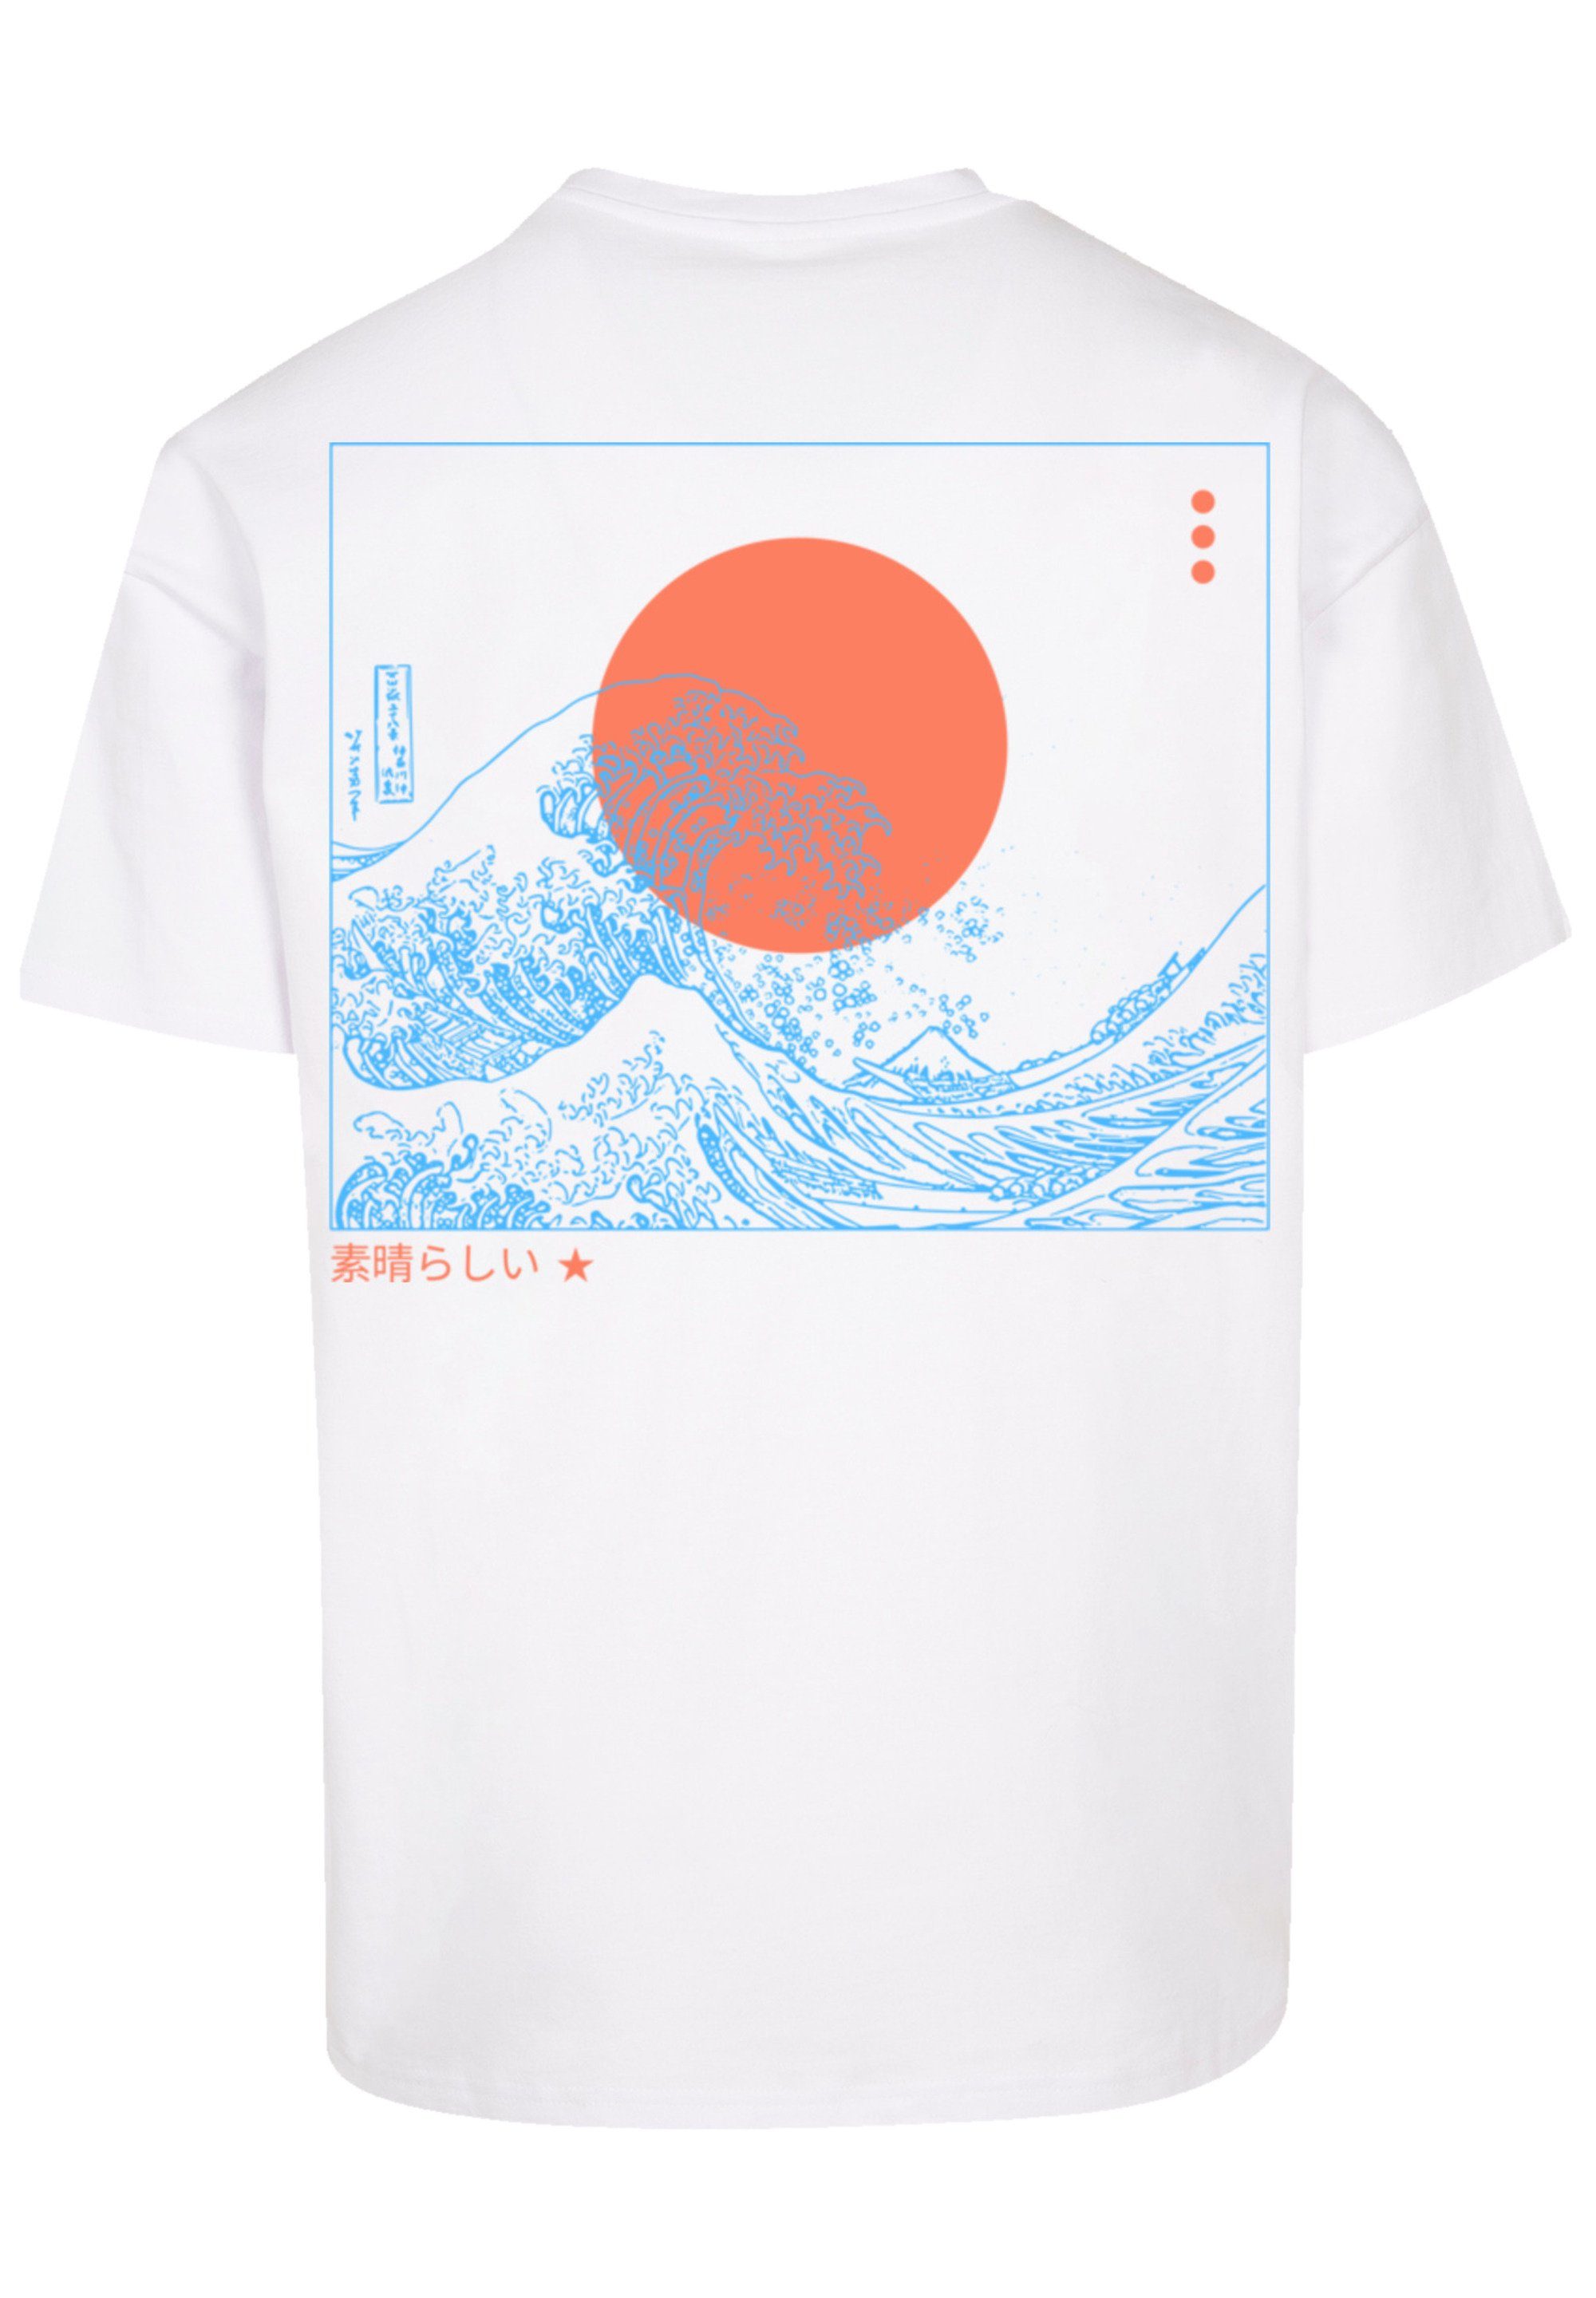 PLUS F4NT4STIC SIZE Fällt T-Shirt bitte aus, Kanagawa bestellen Print, eine weit Welle Größe kleiner